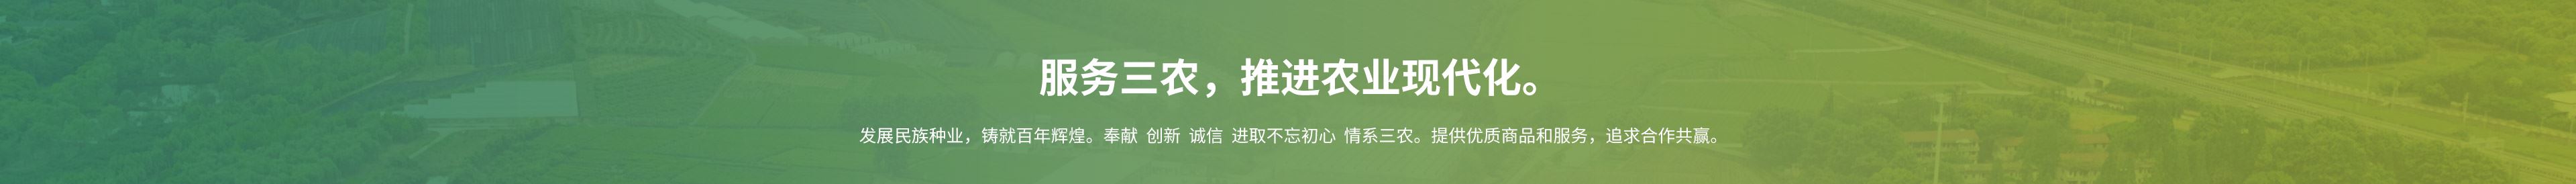 杭州新葡萄平台8883苹果版